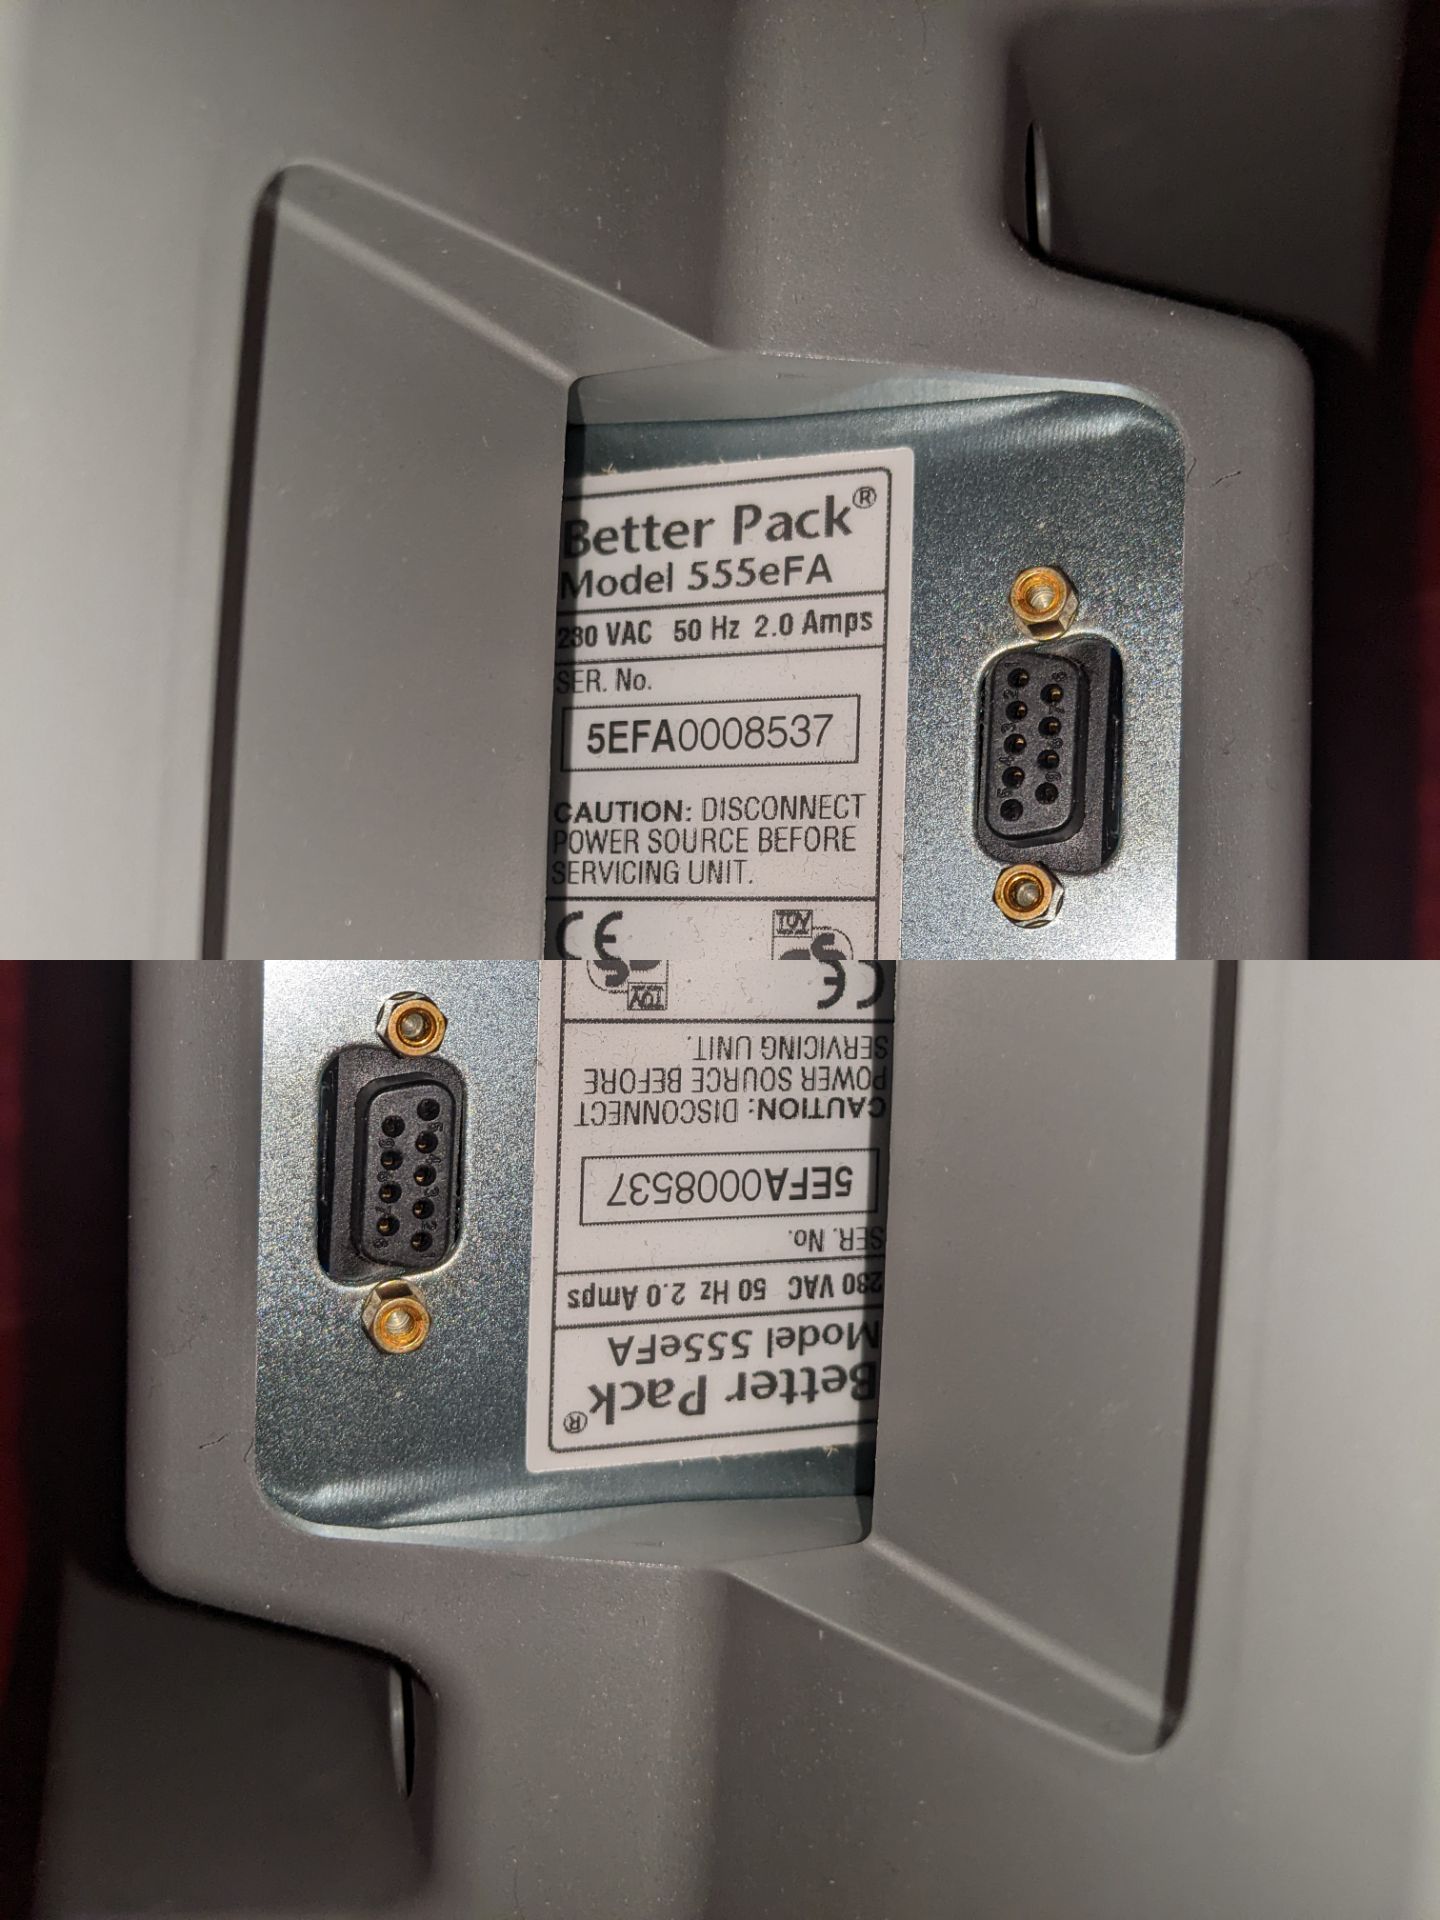 Better Pack Electronic Gummed Tape Dispenser | 555 eFa - Image 4 of 4